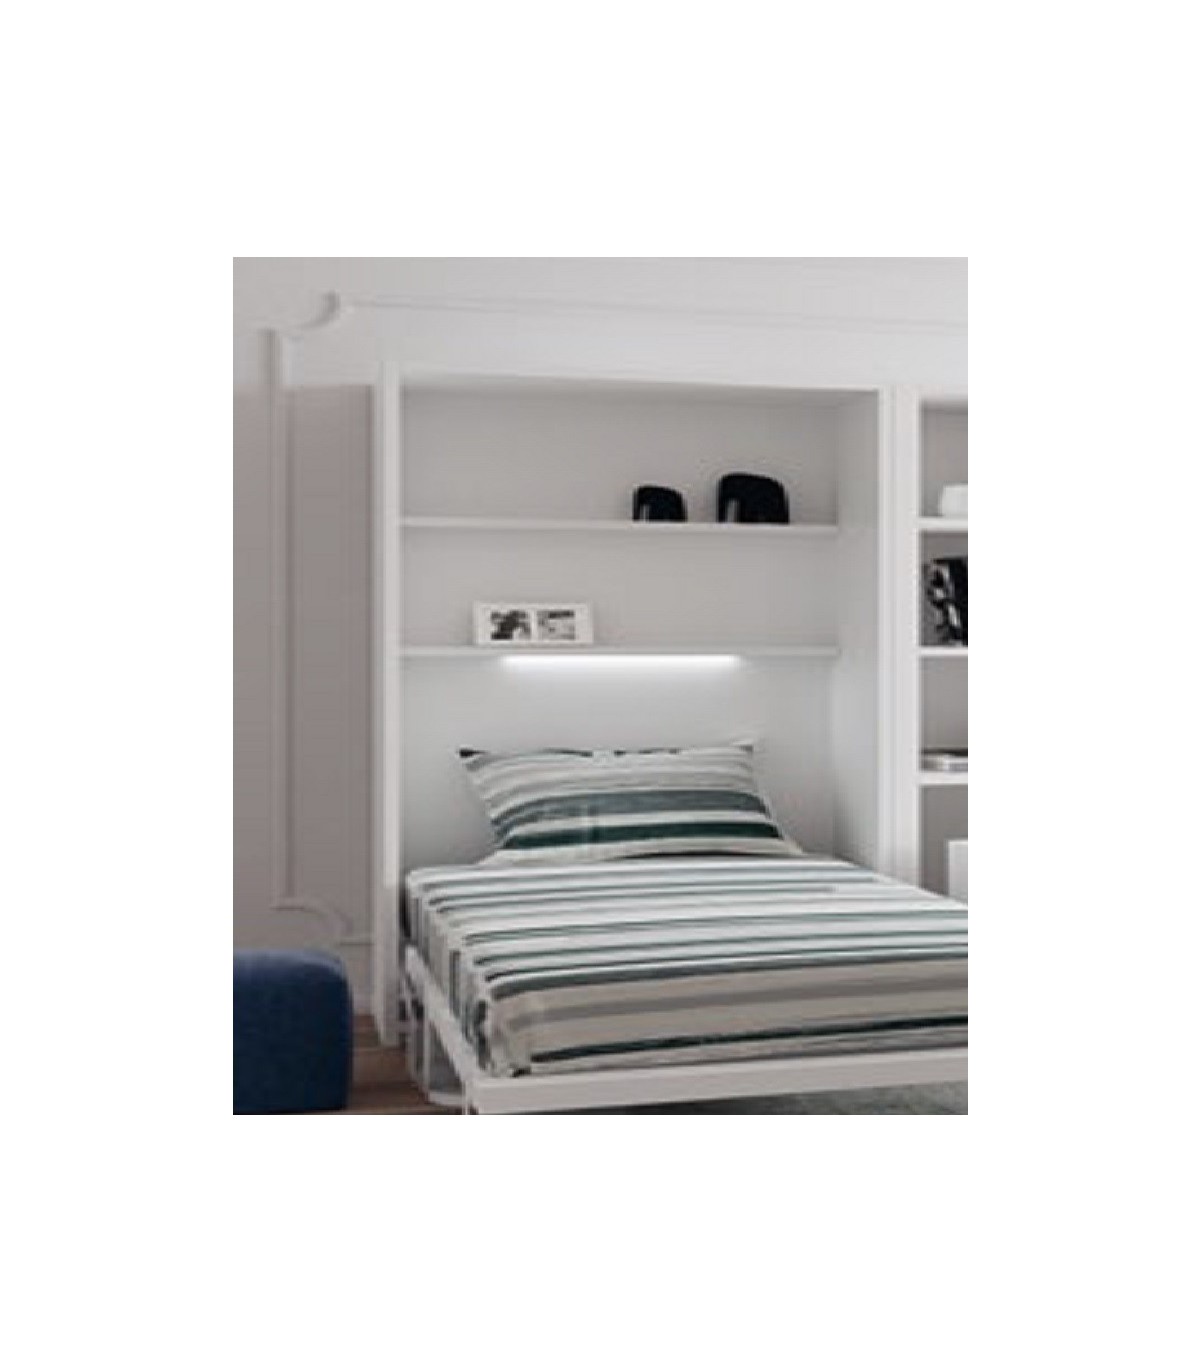 Dormitorio con 2 camas abatibles verticales con altillo y estantería central